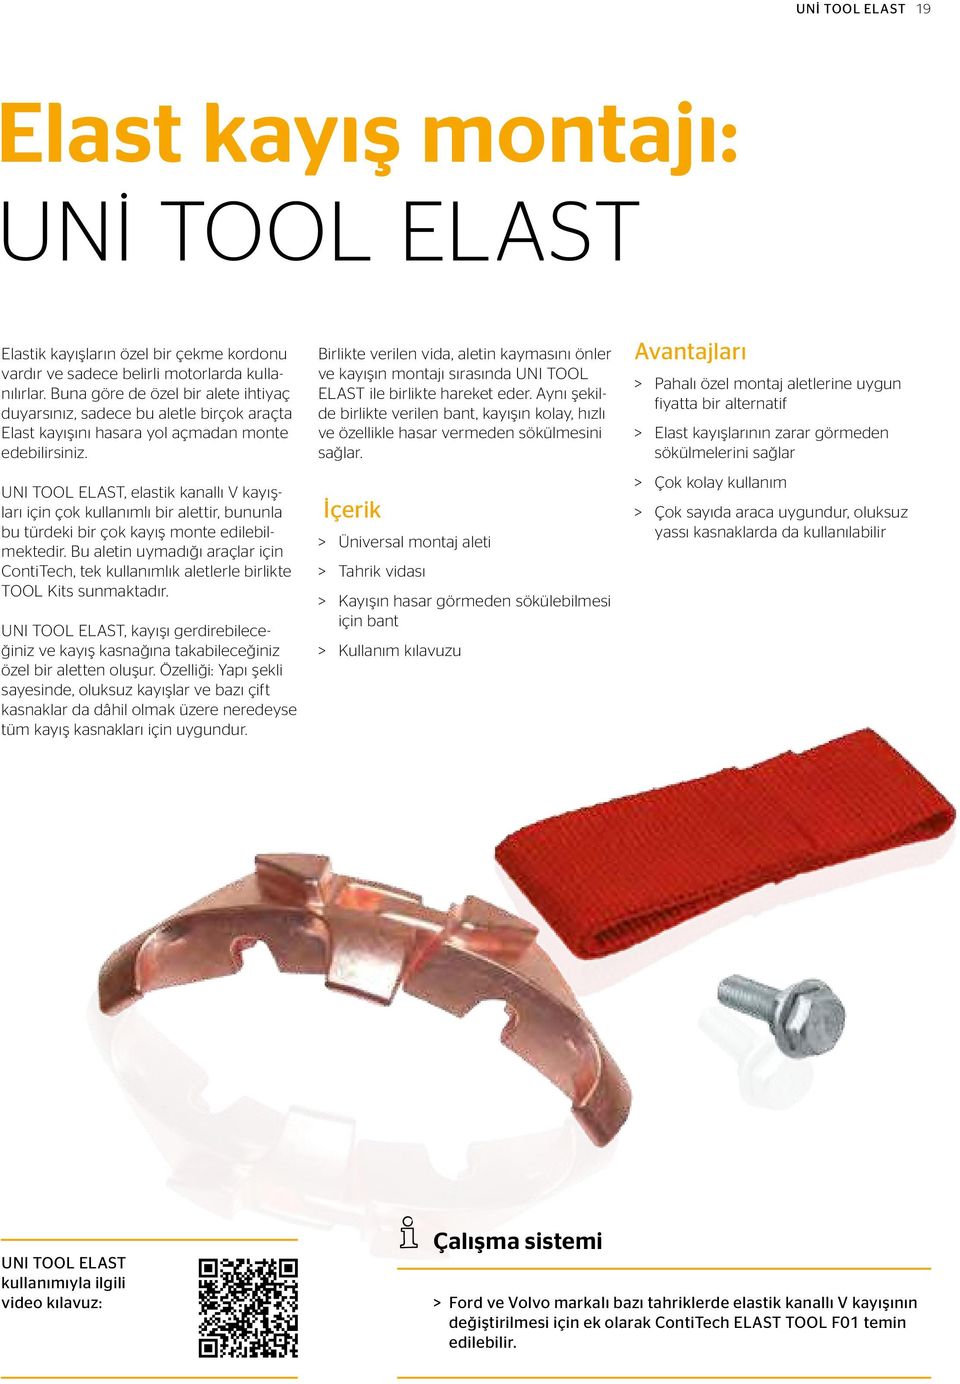 UNI TOOL ELAST, elastik kanallı V kayışları için çok kullanımlı bir alettir, bununla bu türdeki bir çok kayış monte edilebilmektedir.